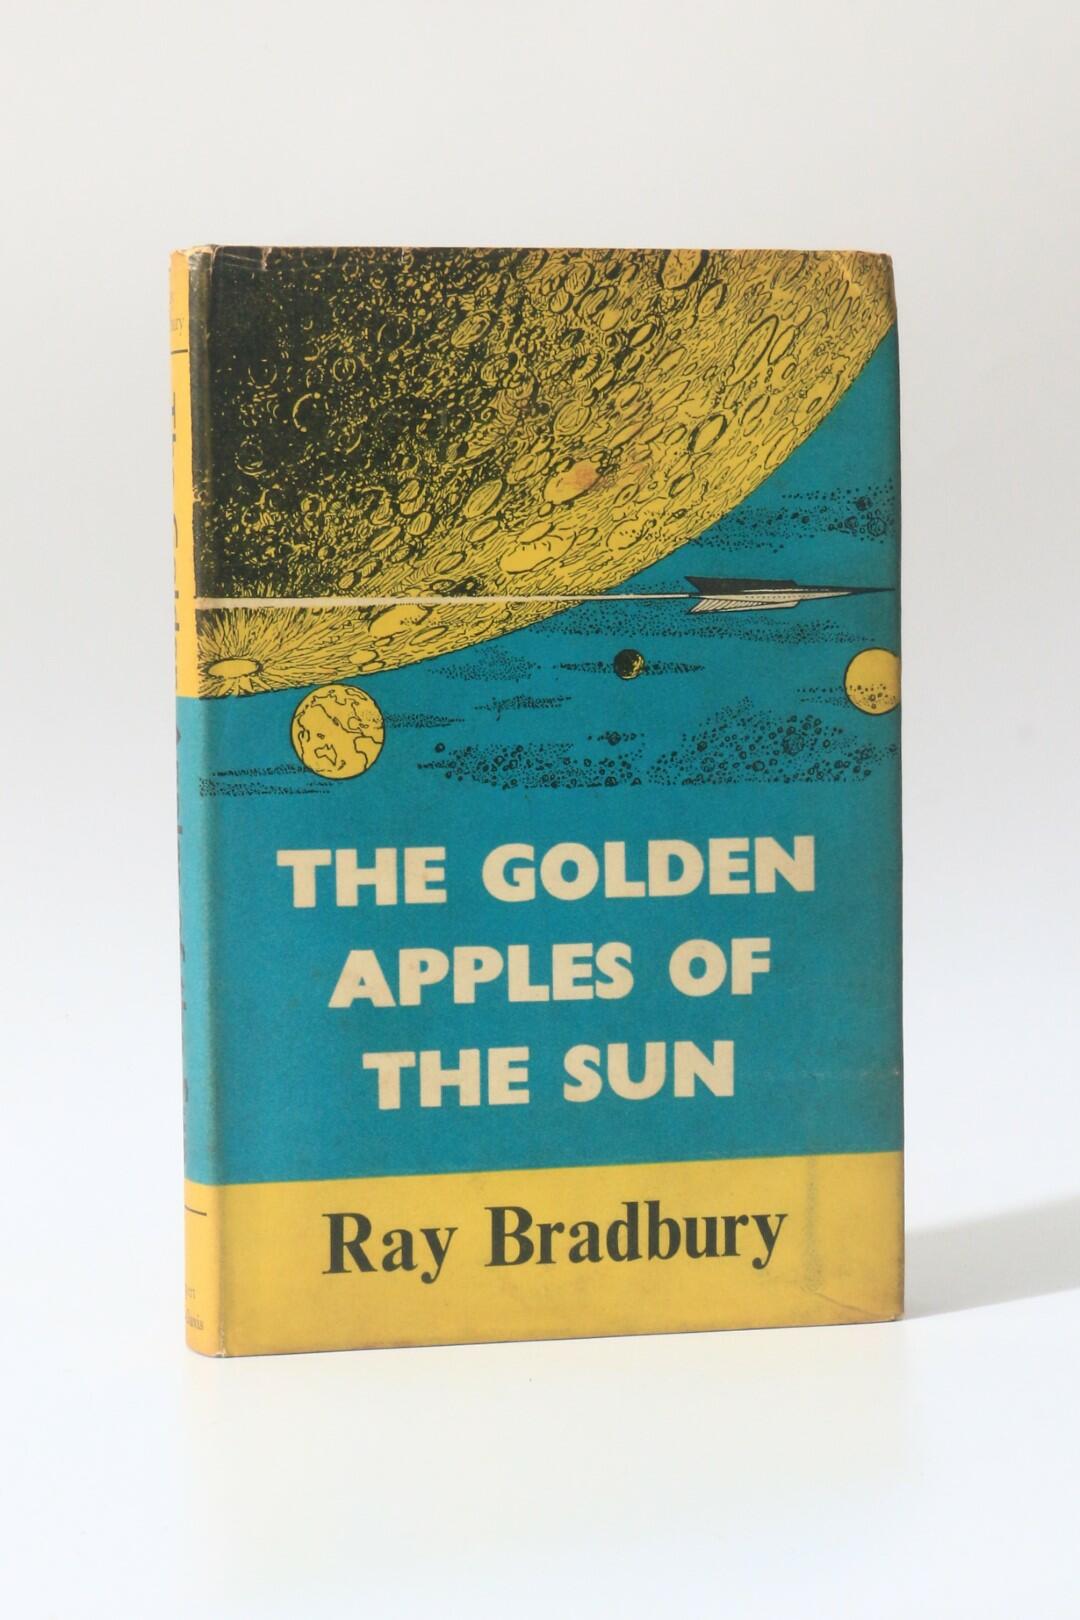 Ray Bradbury - The Golden Apples of the Sun - Rupert Hart-Davis, 1953, First Edition.